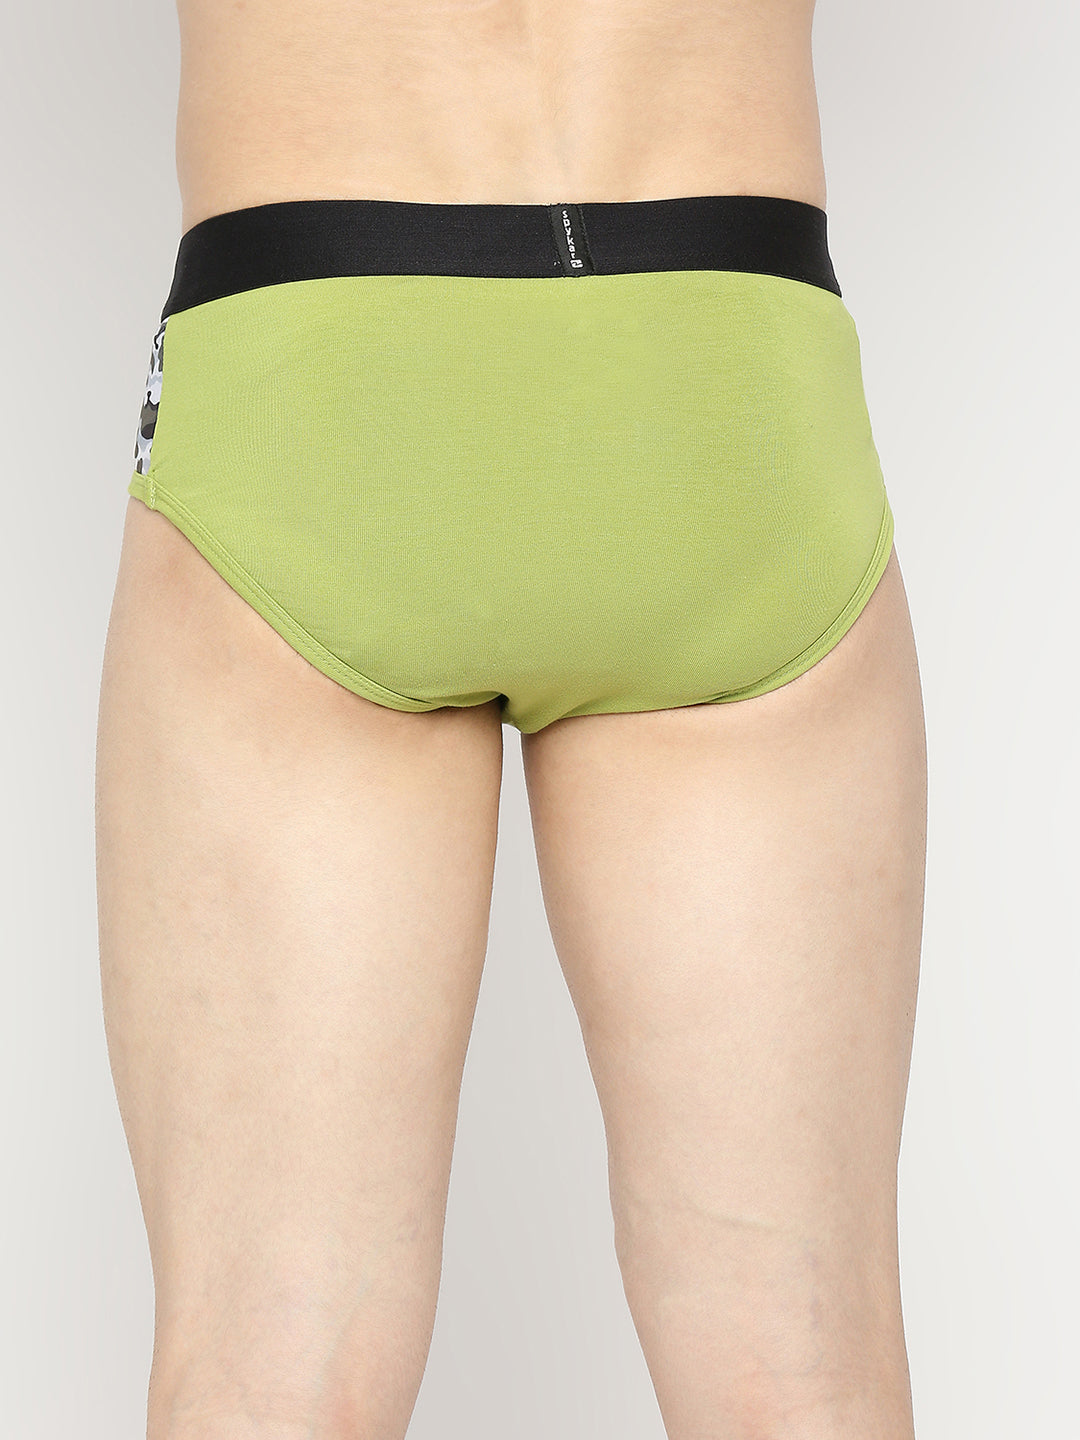 Men Premium Bright Green Cotton Blend Brief - UnderJeans by Spykar